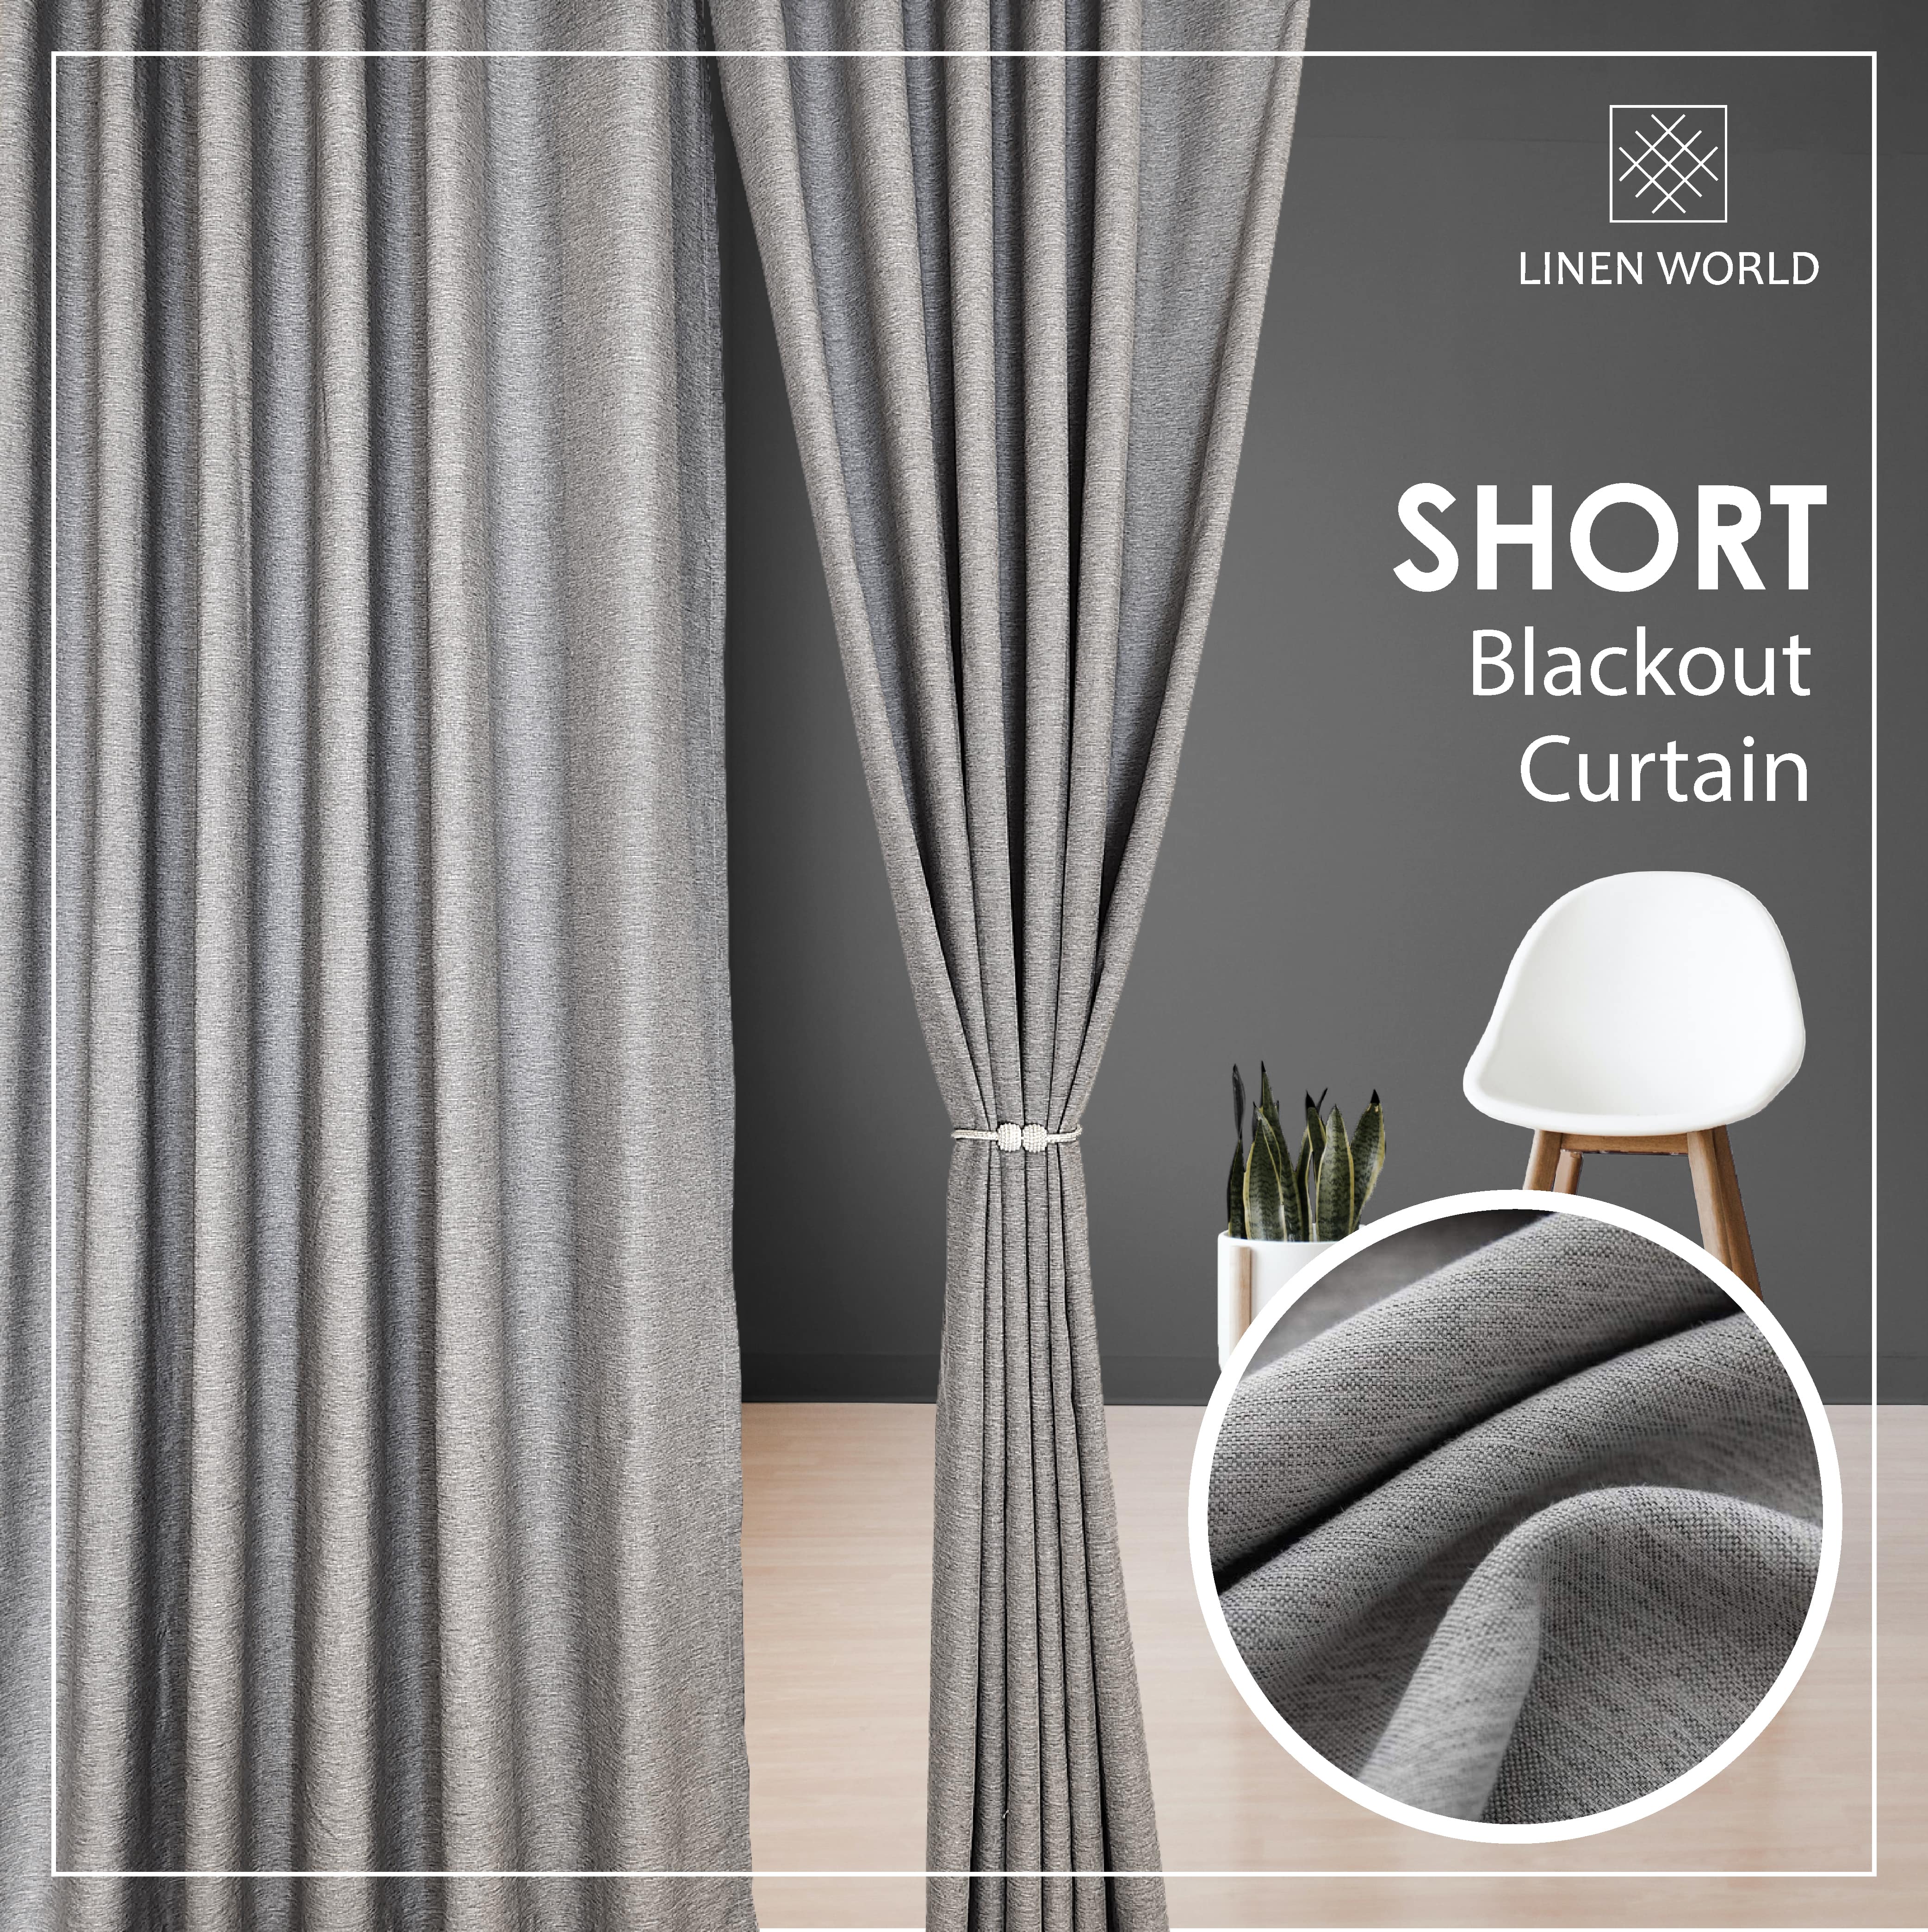 [LANGSIR RAYA 𝟐𝟎𝟐𝟑] Ready Made Curtain!!! Saiz BARU!!! Siap Jahit Langsir Grey Linen Cotton 80% Blackout Kai Tebal Curtain # Sliding Door # Window Panel # Pintu Bilik